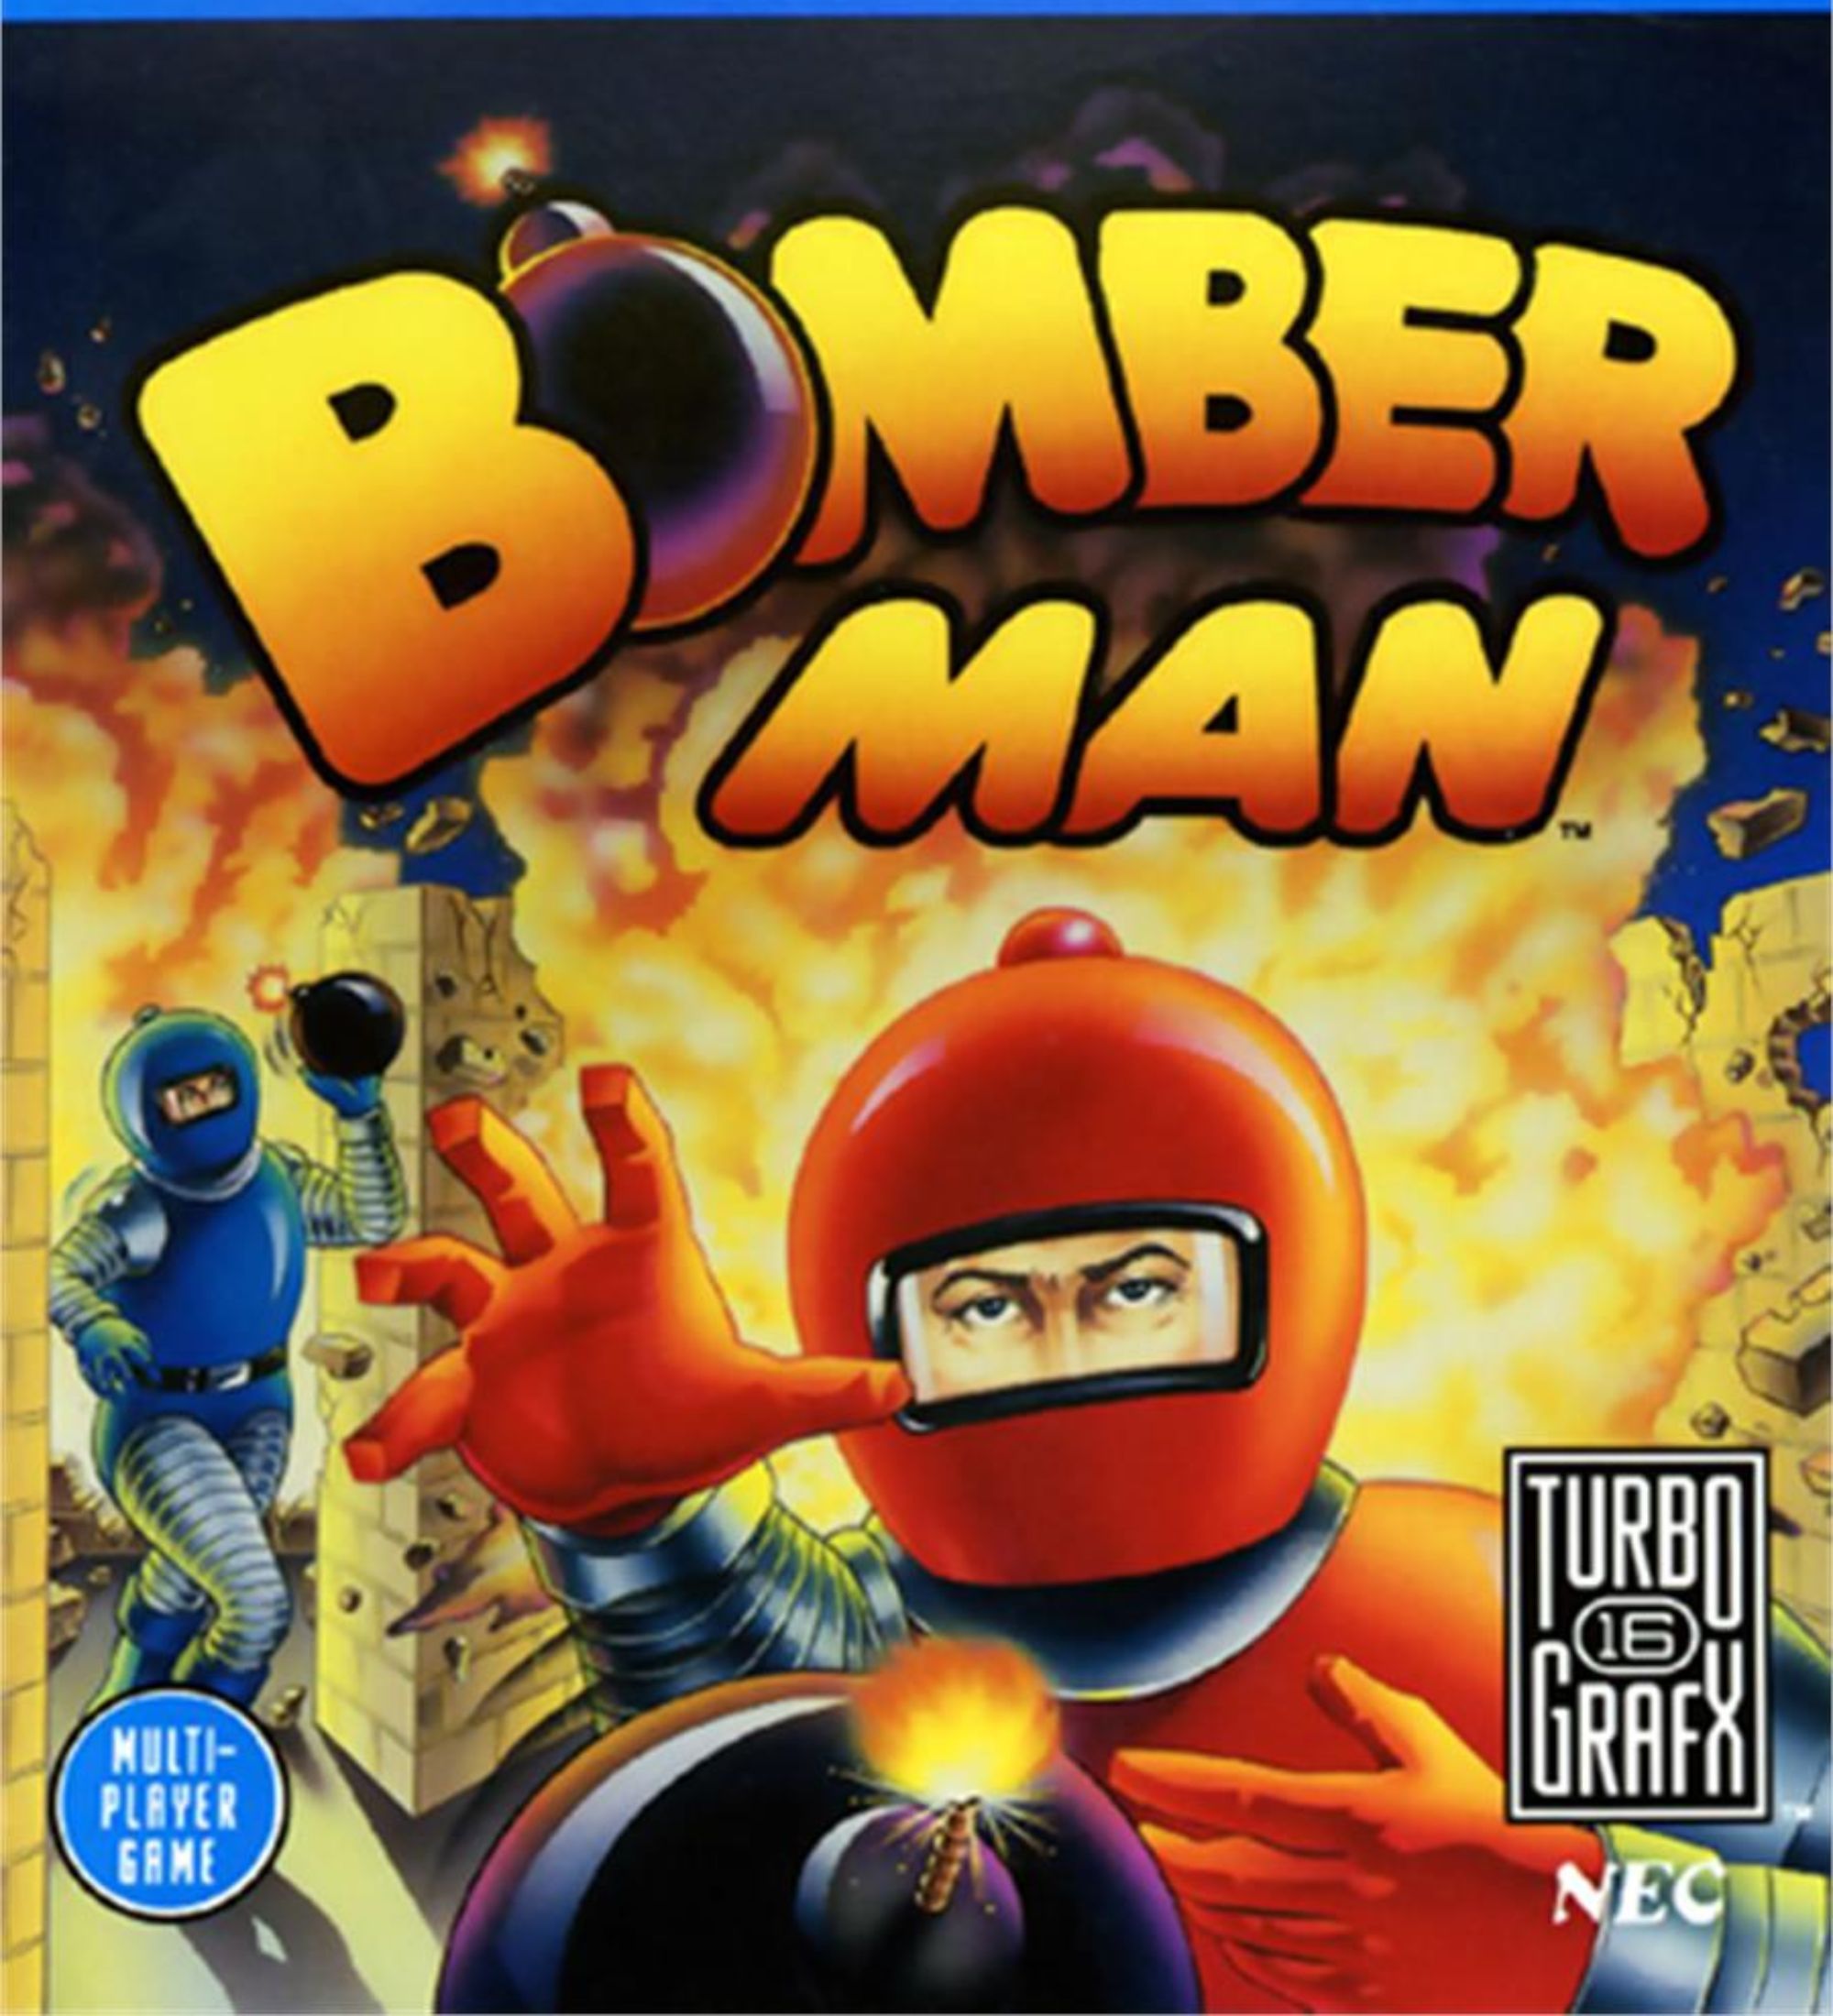 Bomberman box art dois homens em ternos vermelhos e azuis jogam bombas na frente de um fundo explodindo